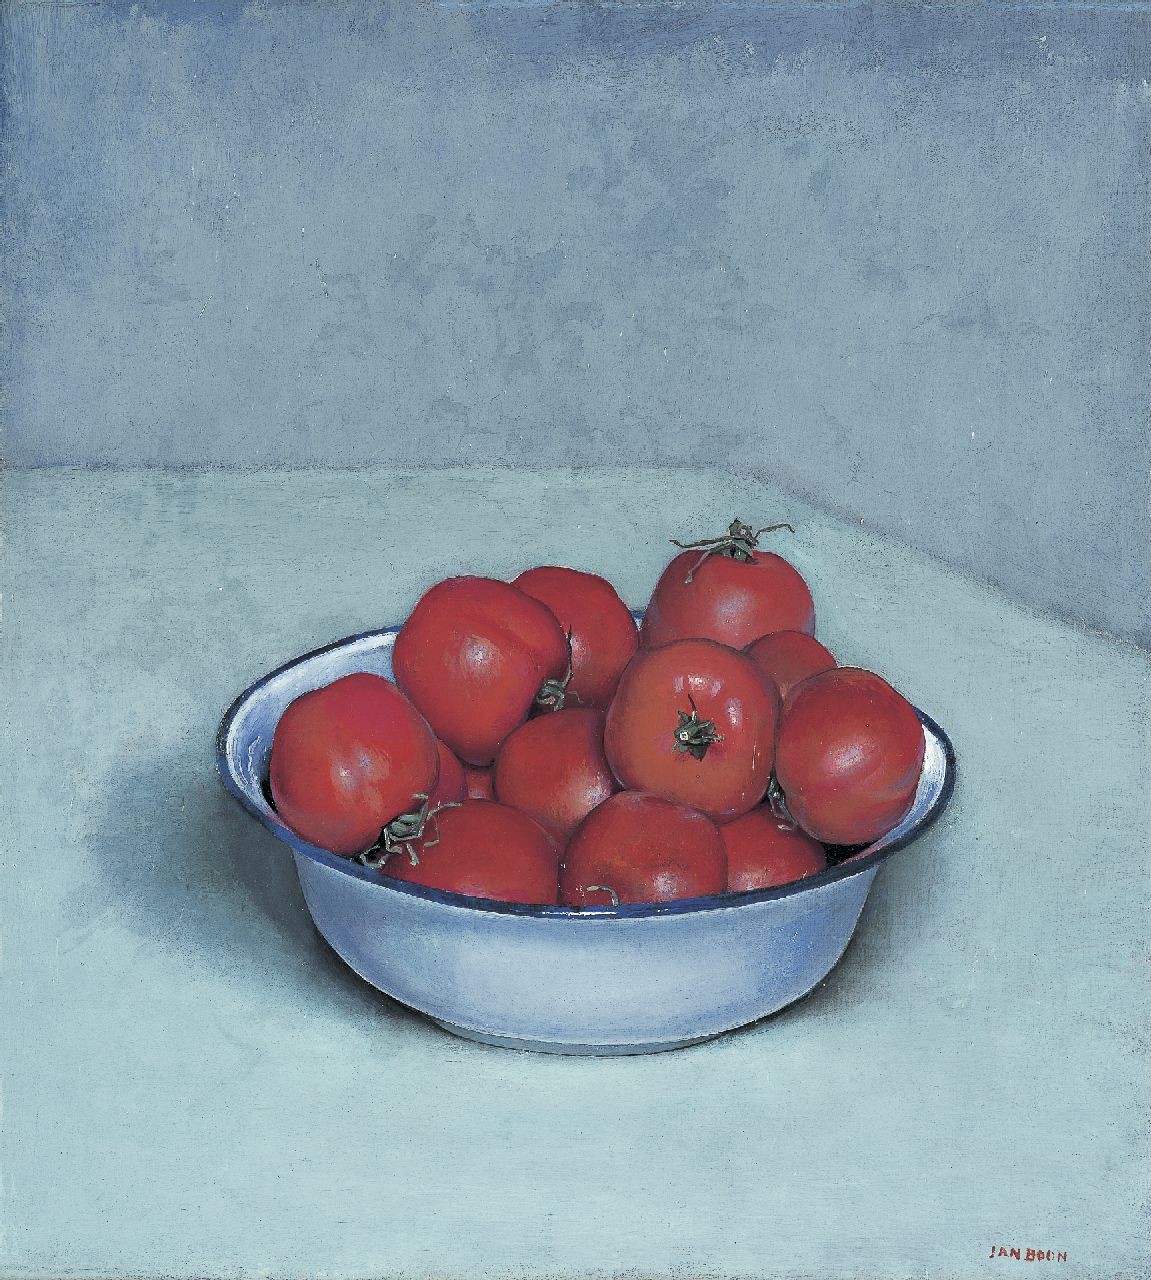 Boon J.  | Jan Boon, Stilleven met tomaten in een emaille schaal, olieverf op doek 41,1 x 37,3 cm, gesigneerd rechtsonder